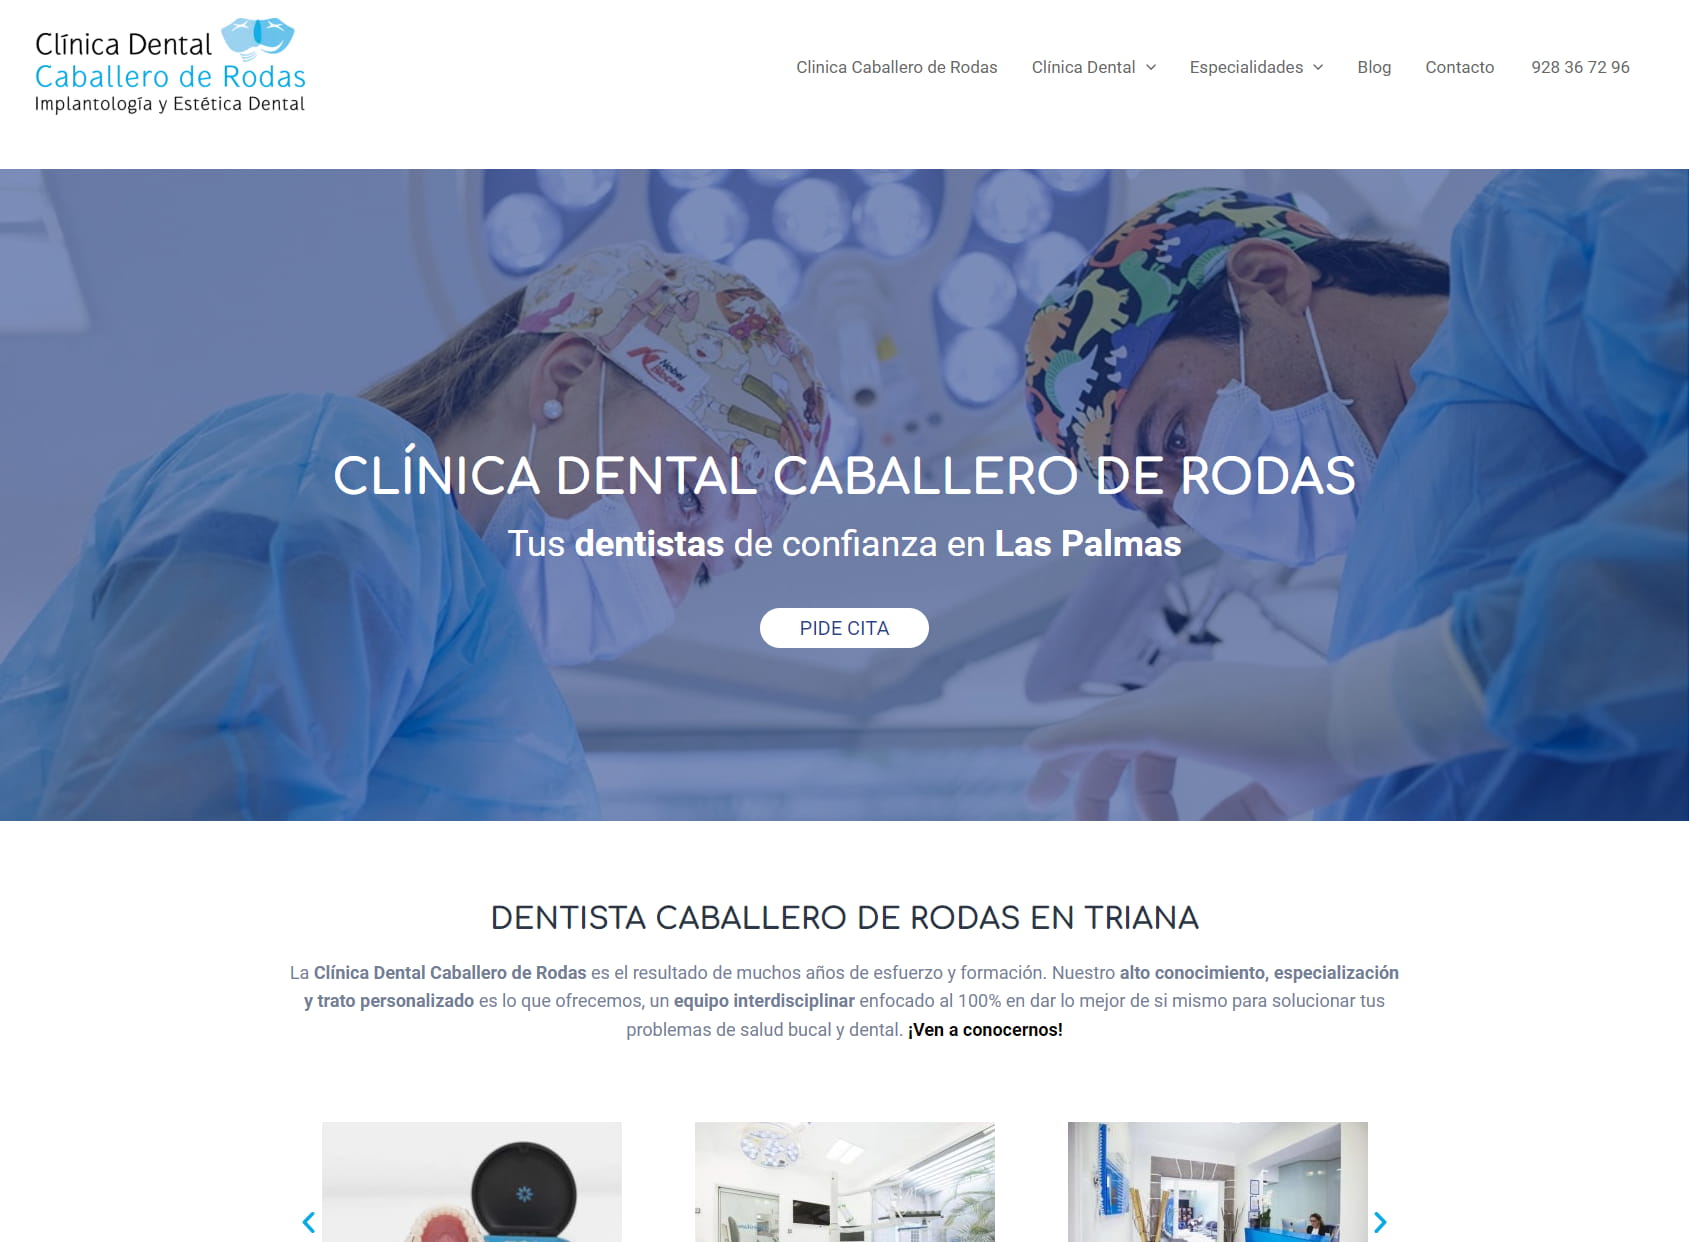 Dentists - Dental Clinic Caballero De Rodas